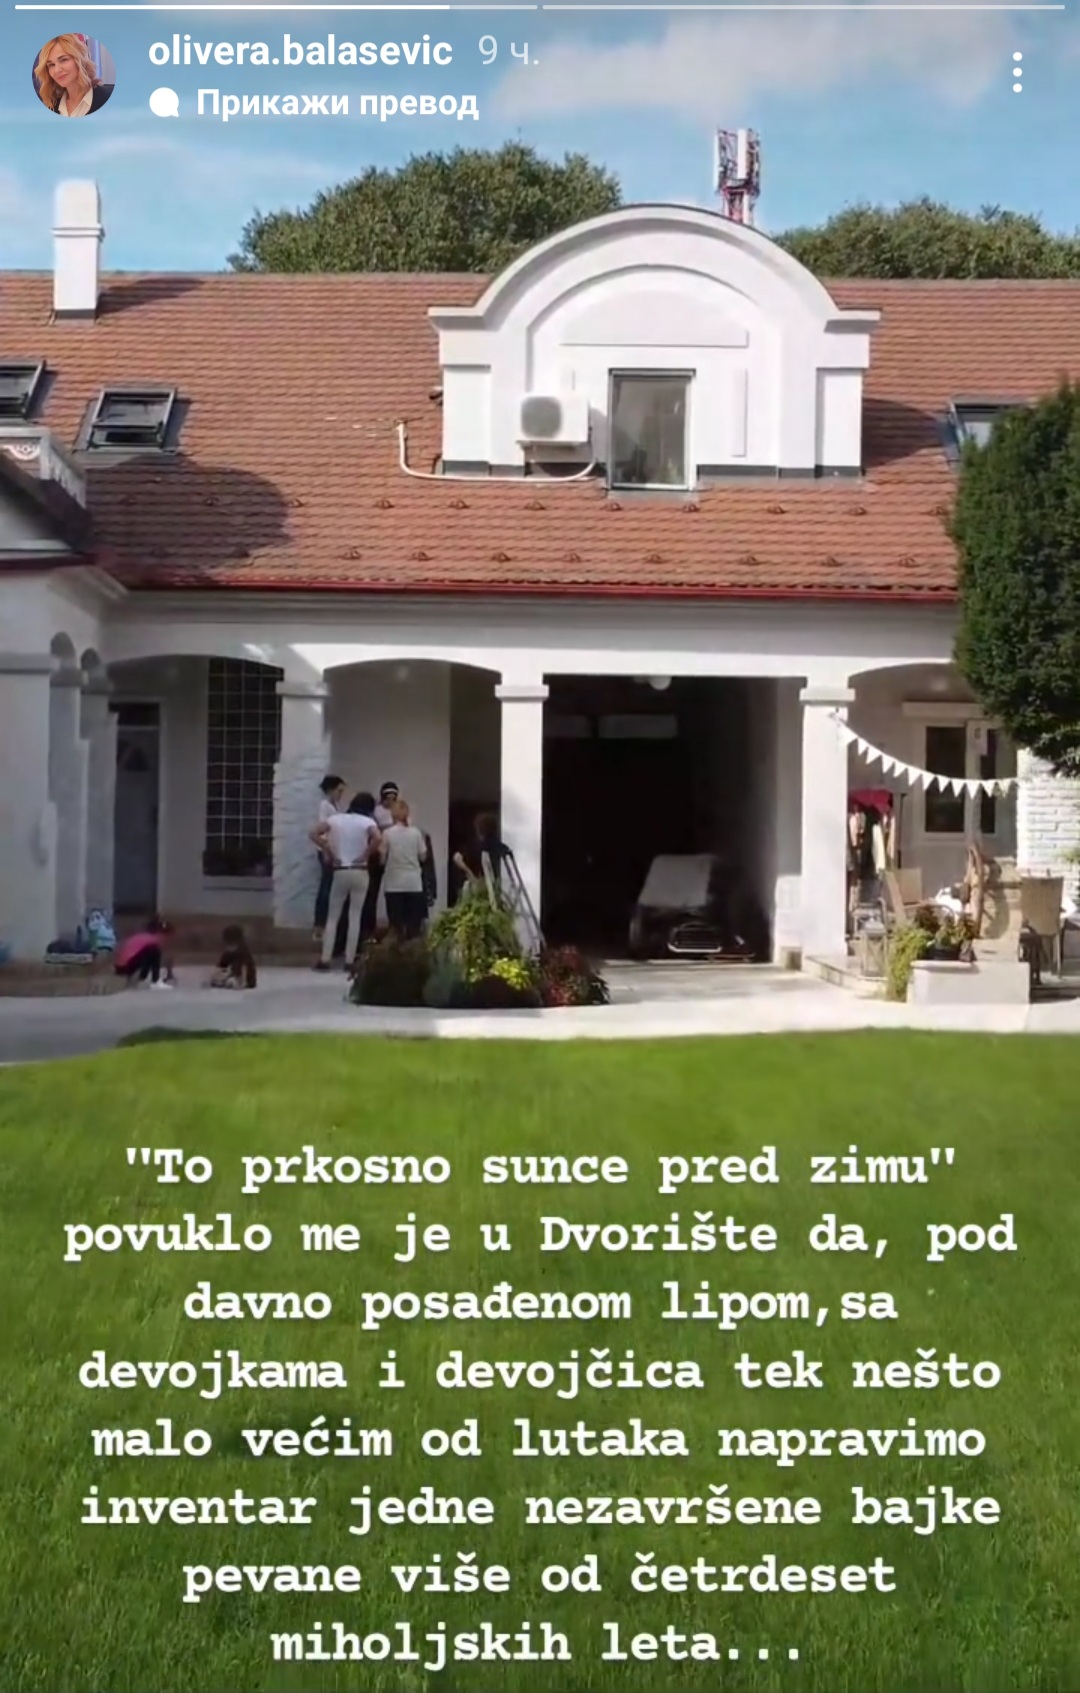 Kuća Đorđa Balaševića svet portal svet